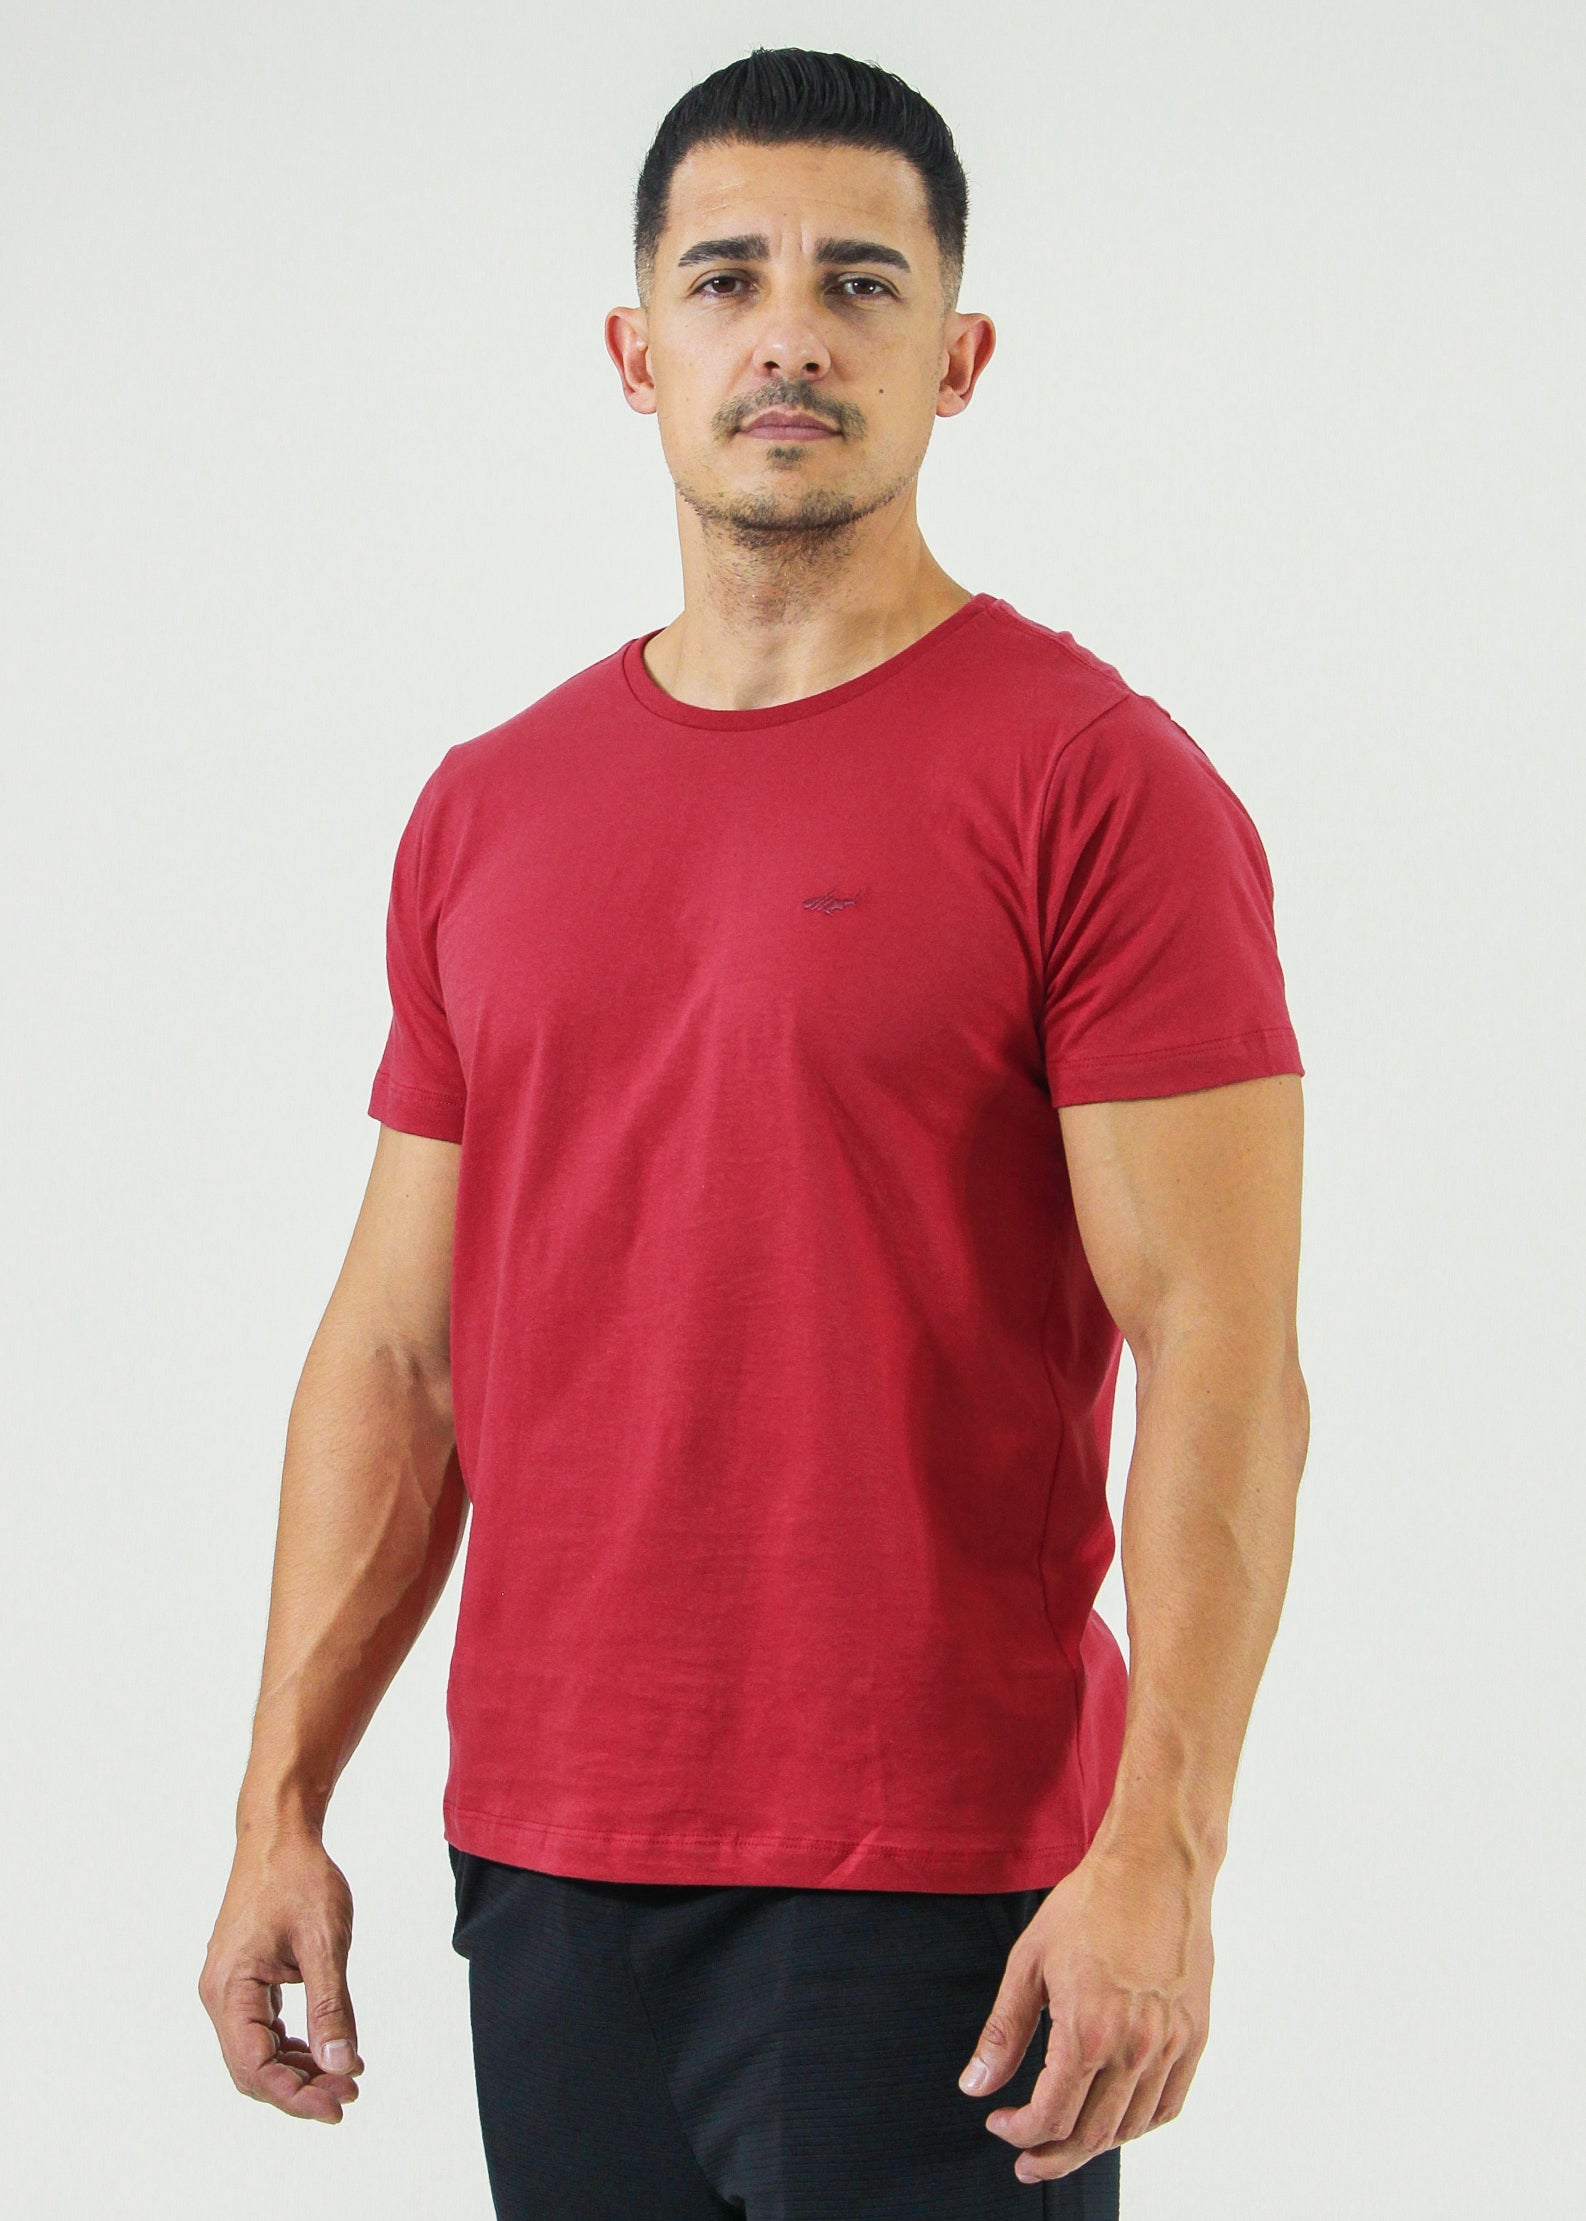 Camiseta Básica - Vermelha